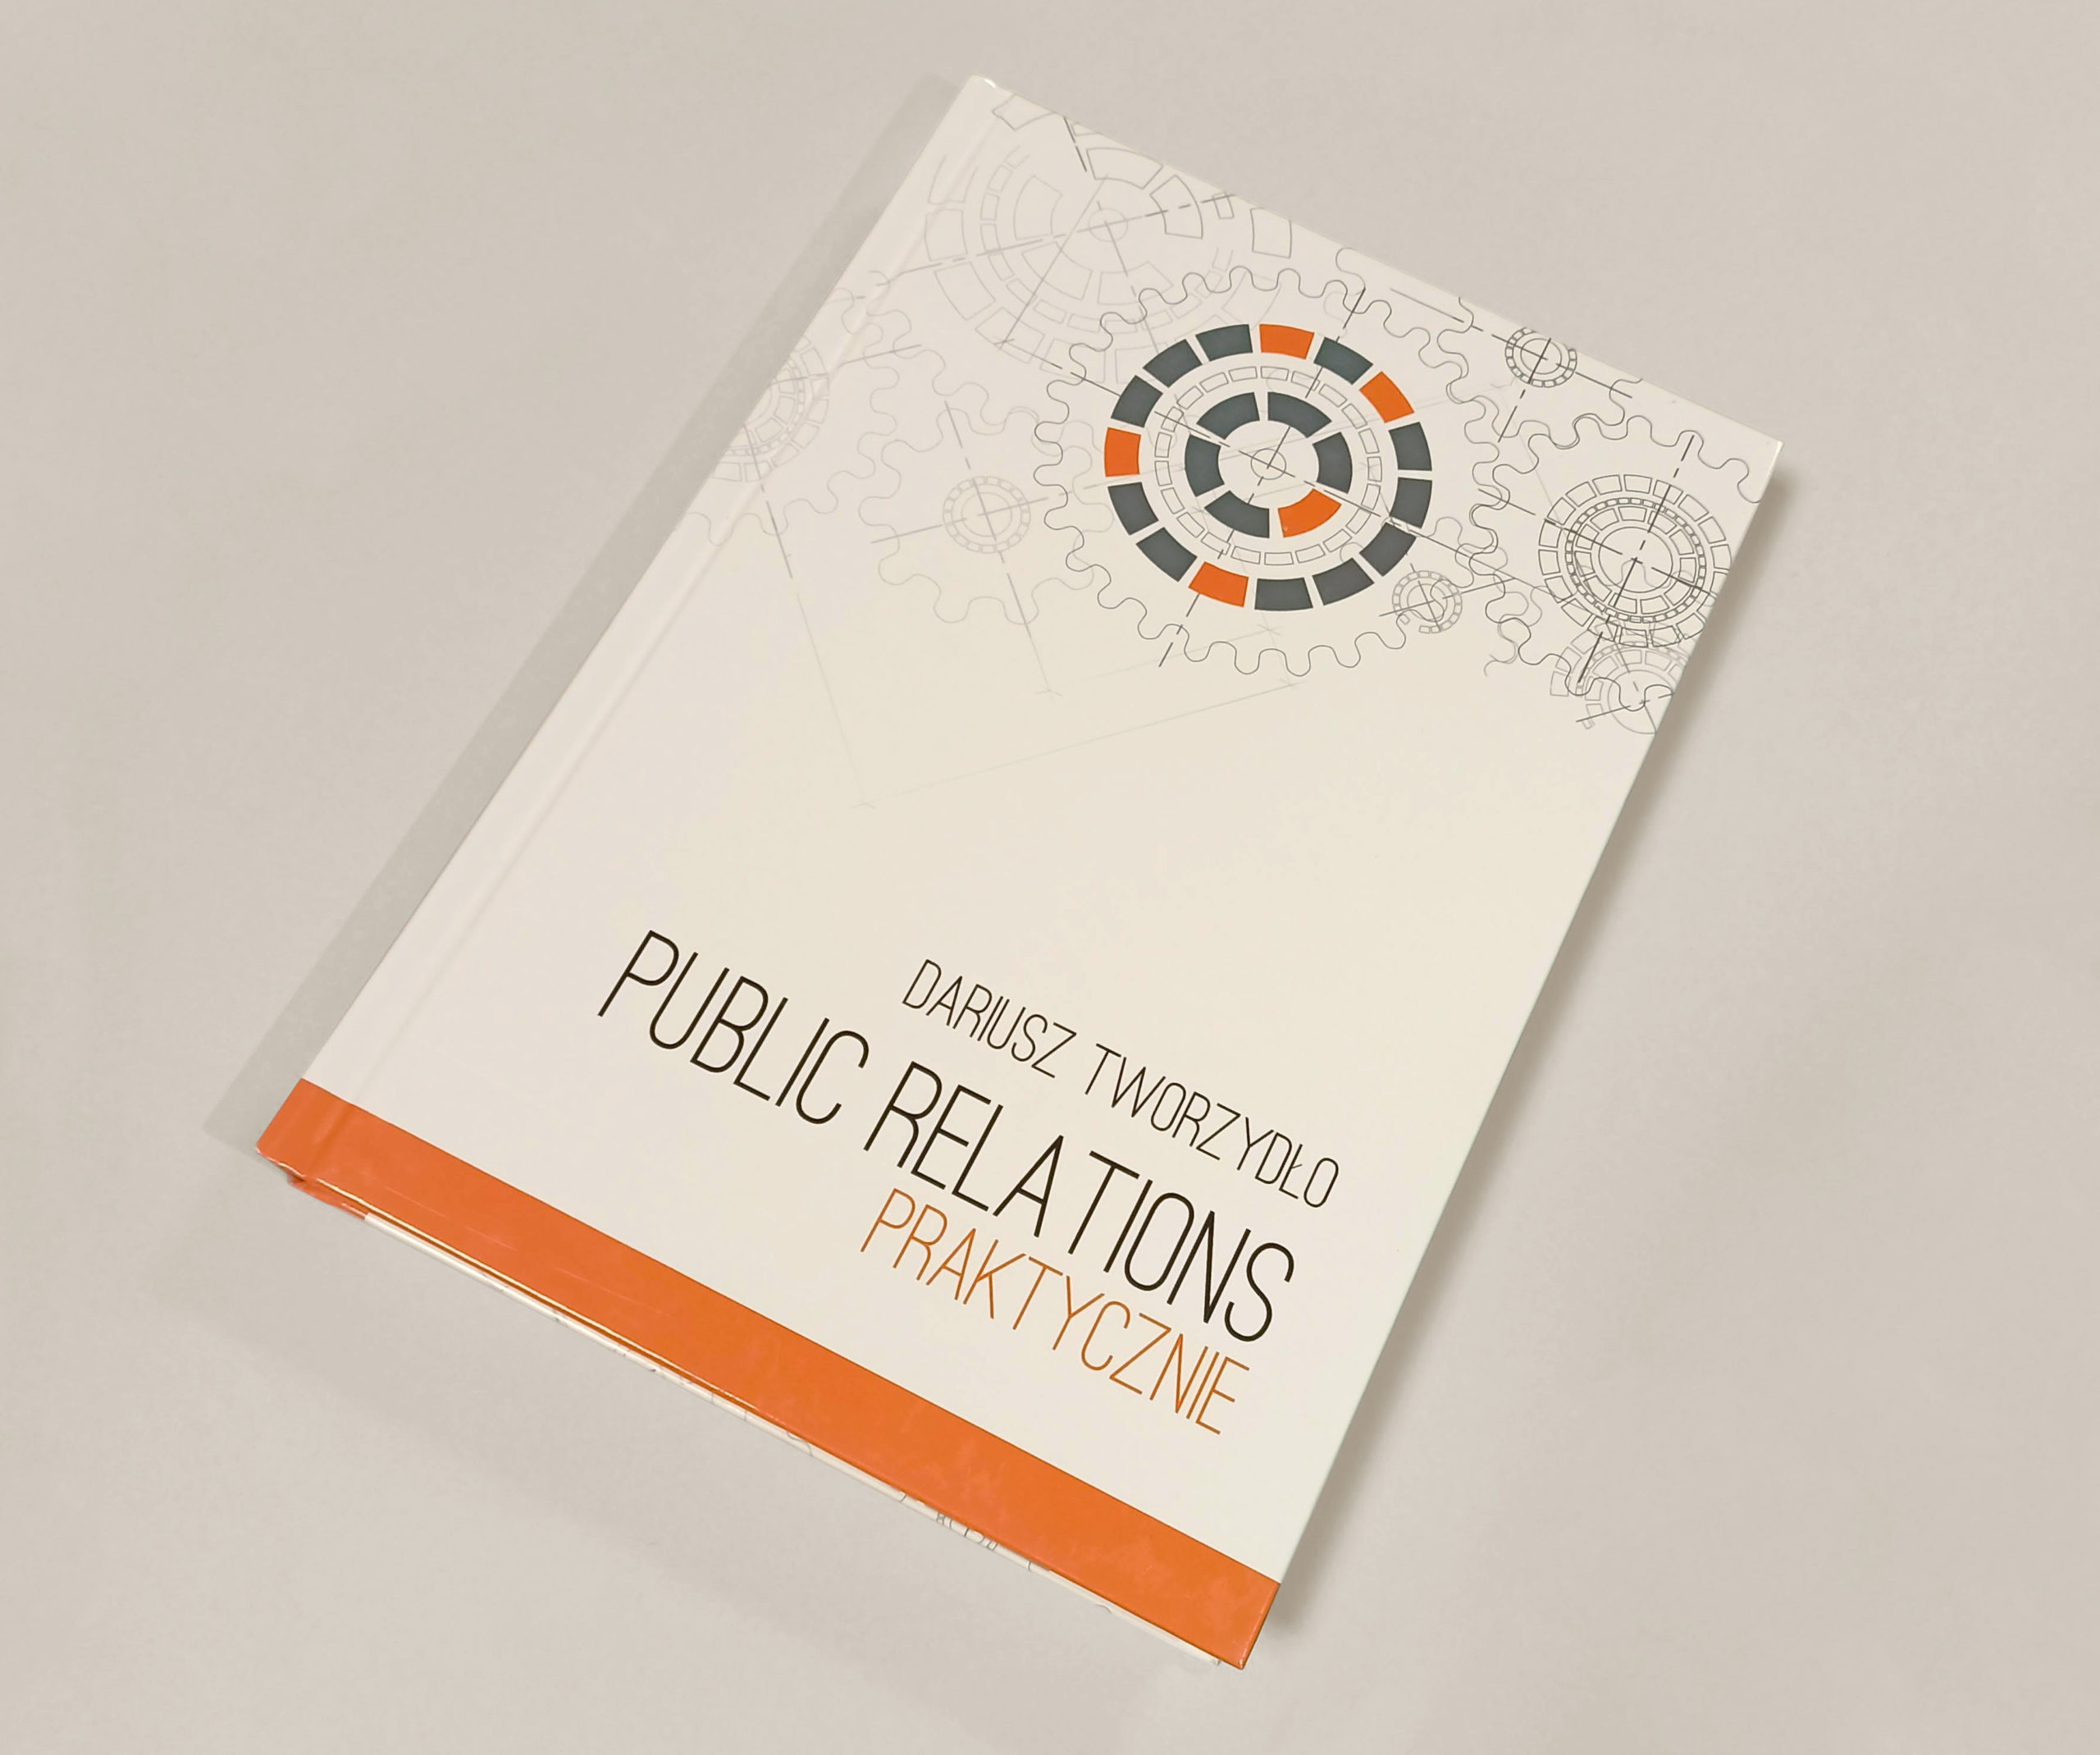 Public relations praktycznie – książka autorstwa prezesa Exacto